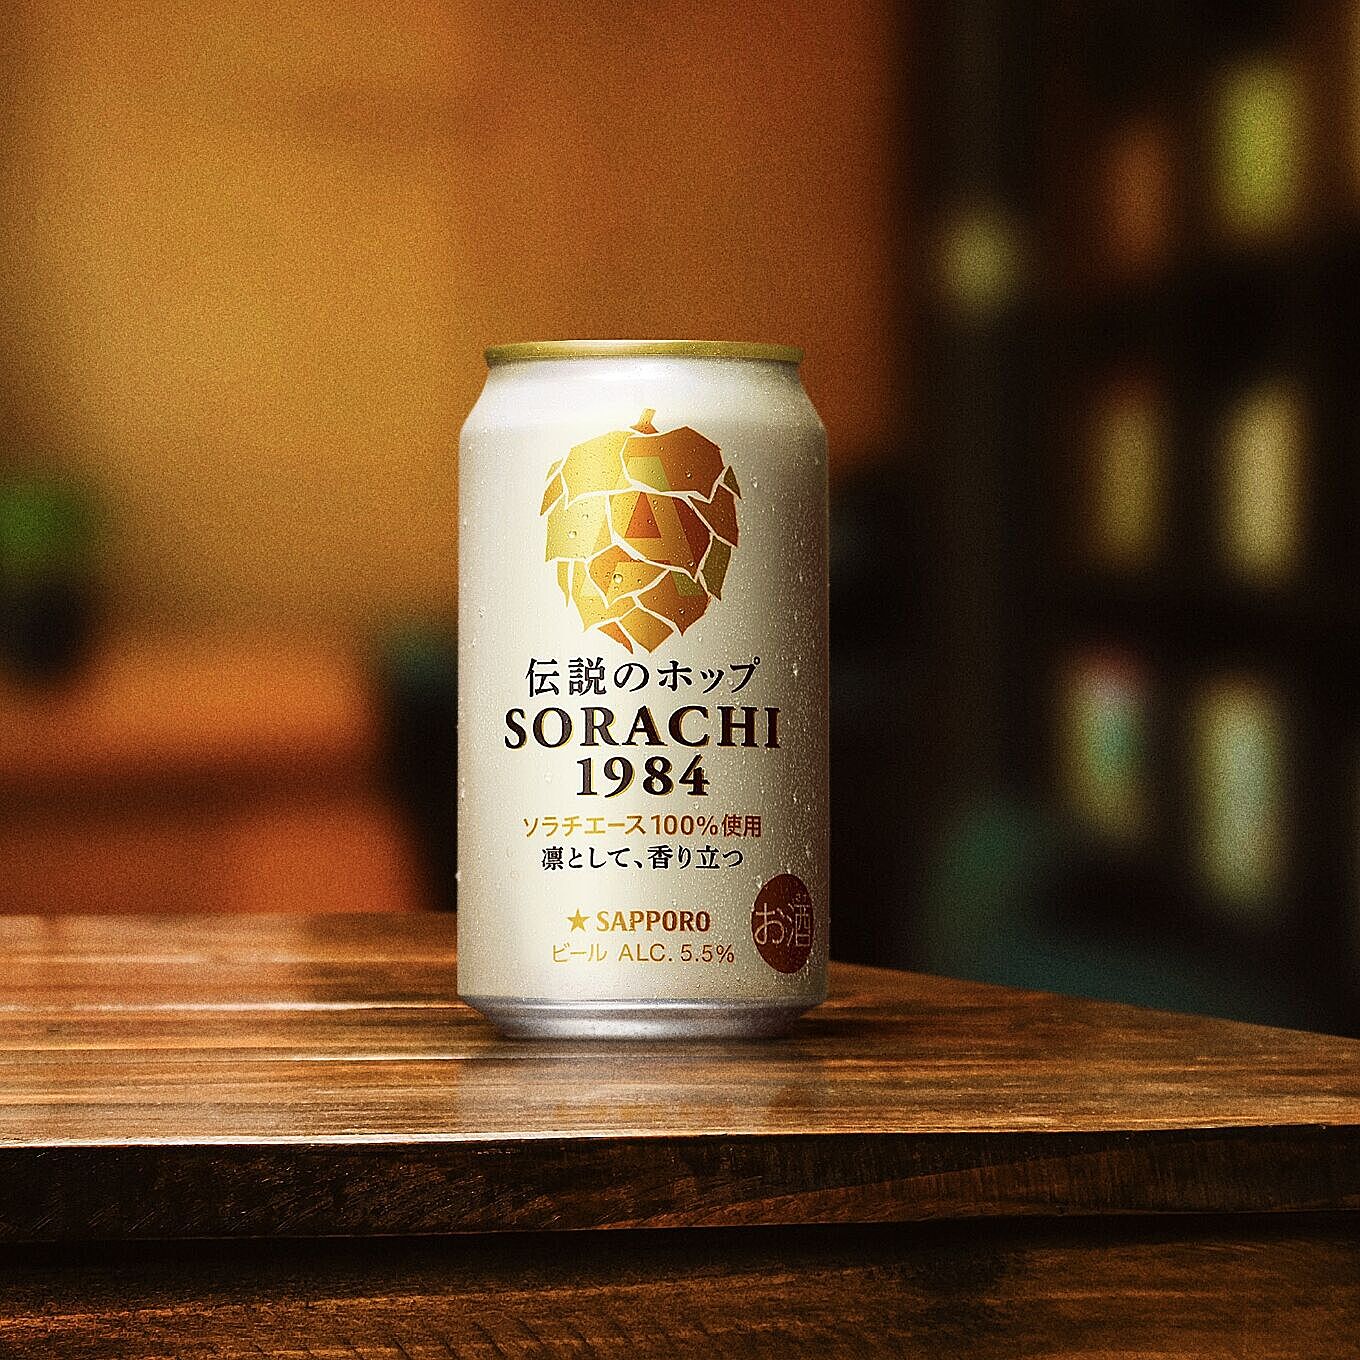 伝説のホップだけでつくったビール「SORACHI 1984」の香りと味わいを楽しんでみませんか？